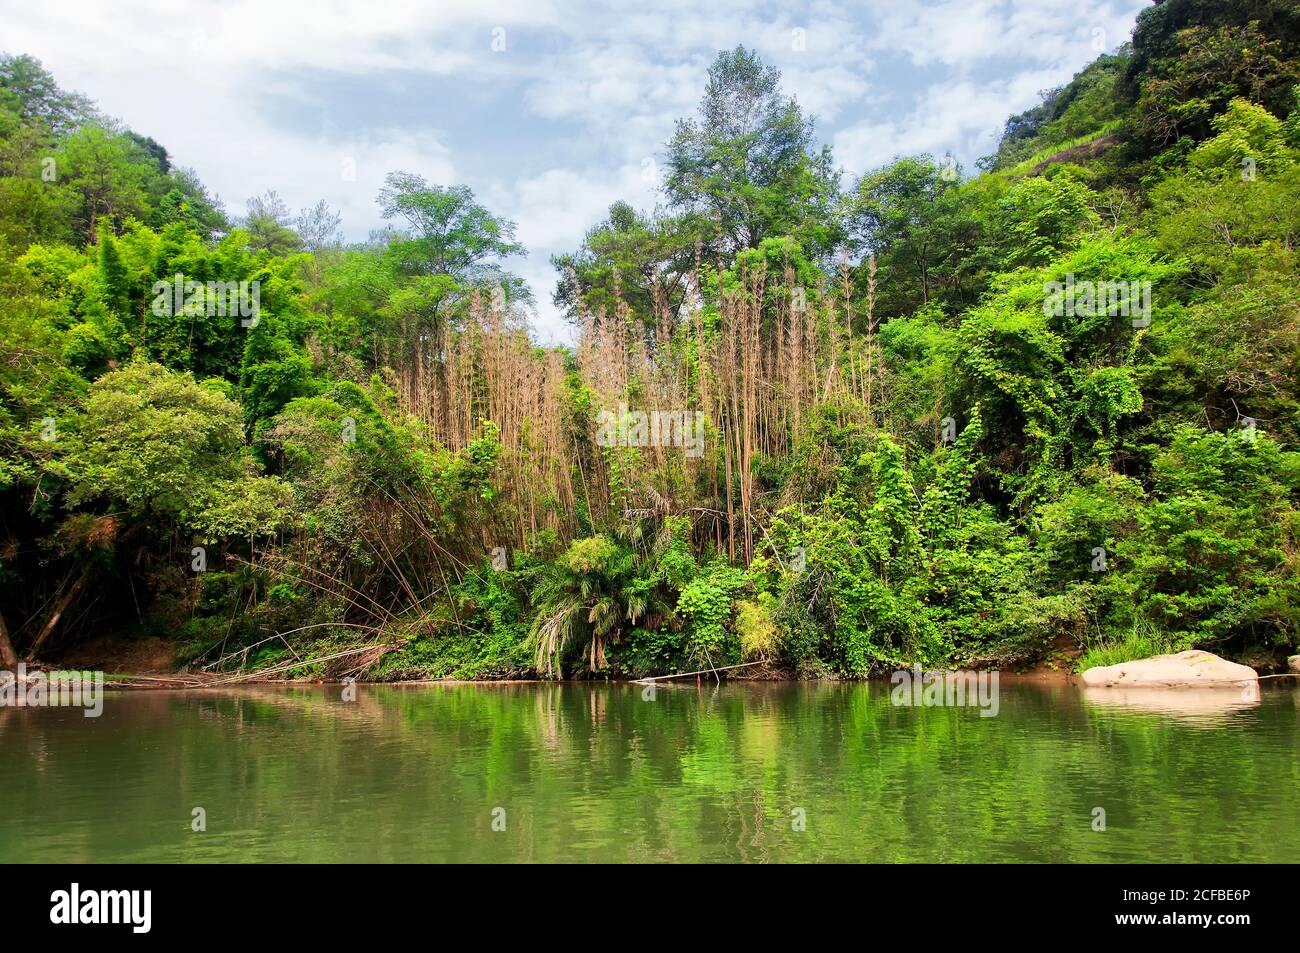 Un boschetto di alberi di bambù e insolite formazioni rocciose sul fiume a nove curve in cina wuyishan nella provincia fujiana. Foto Stock